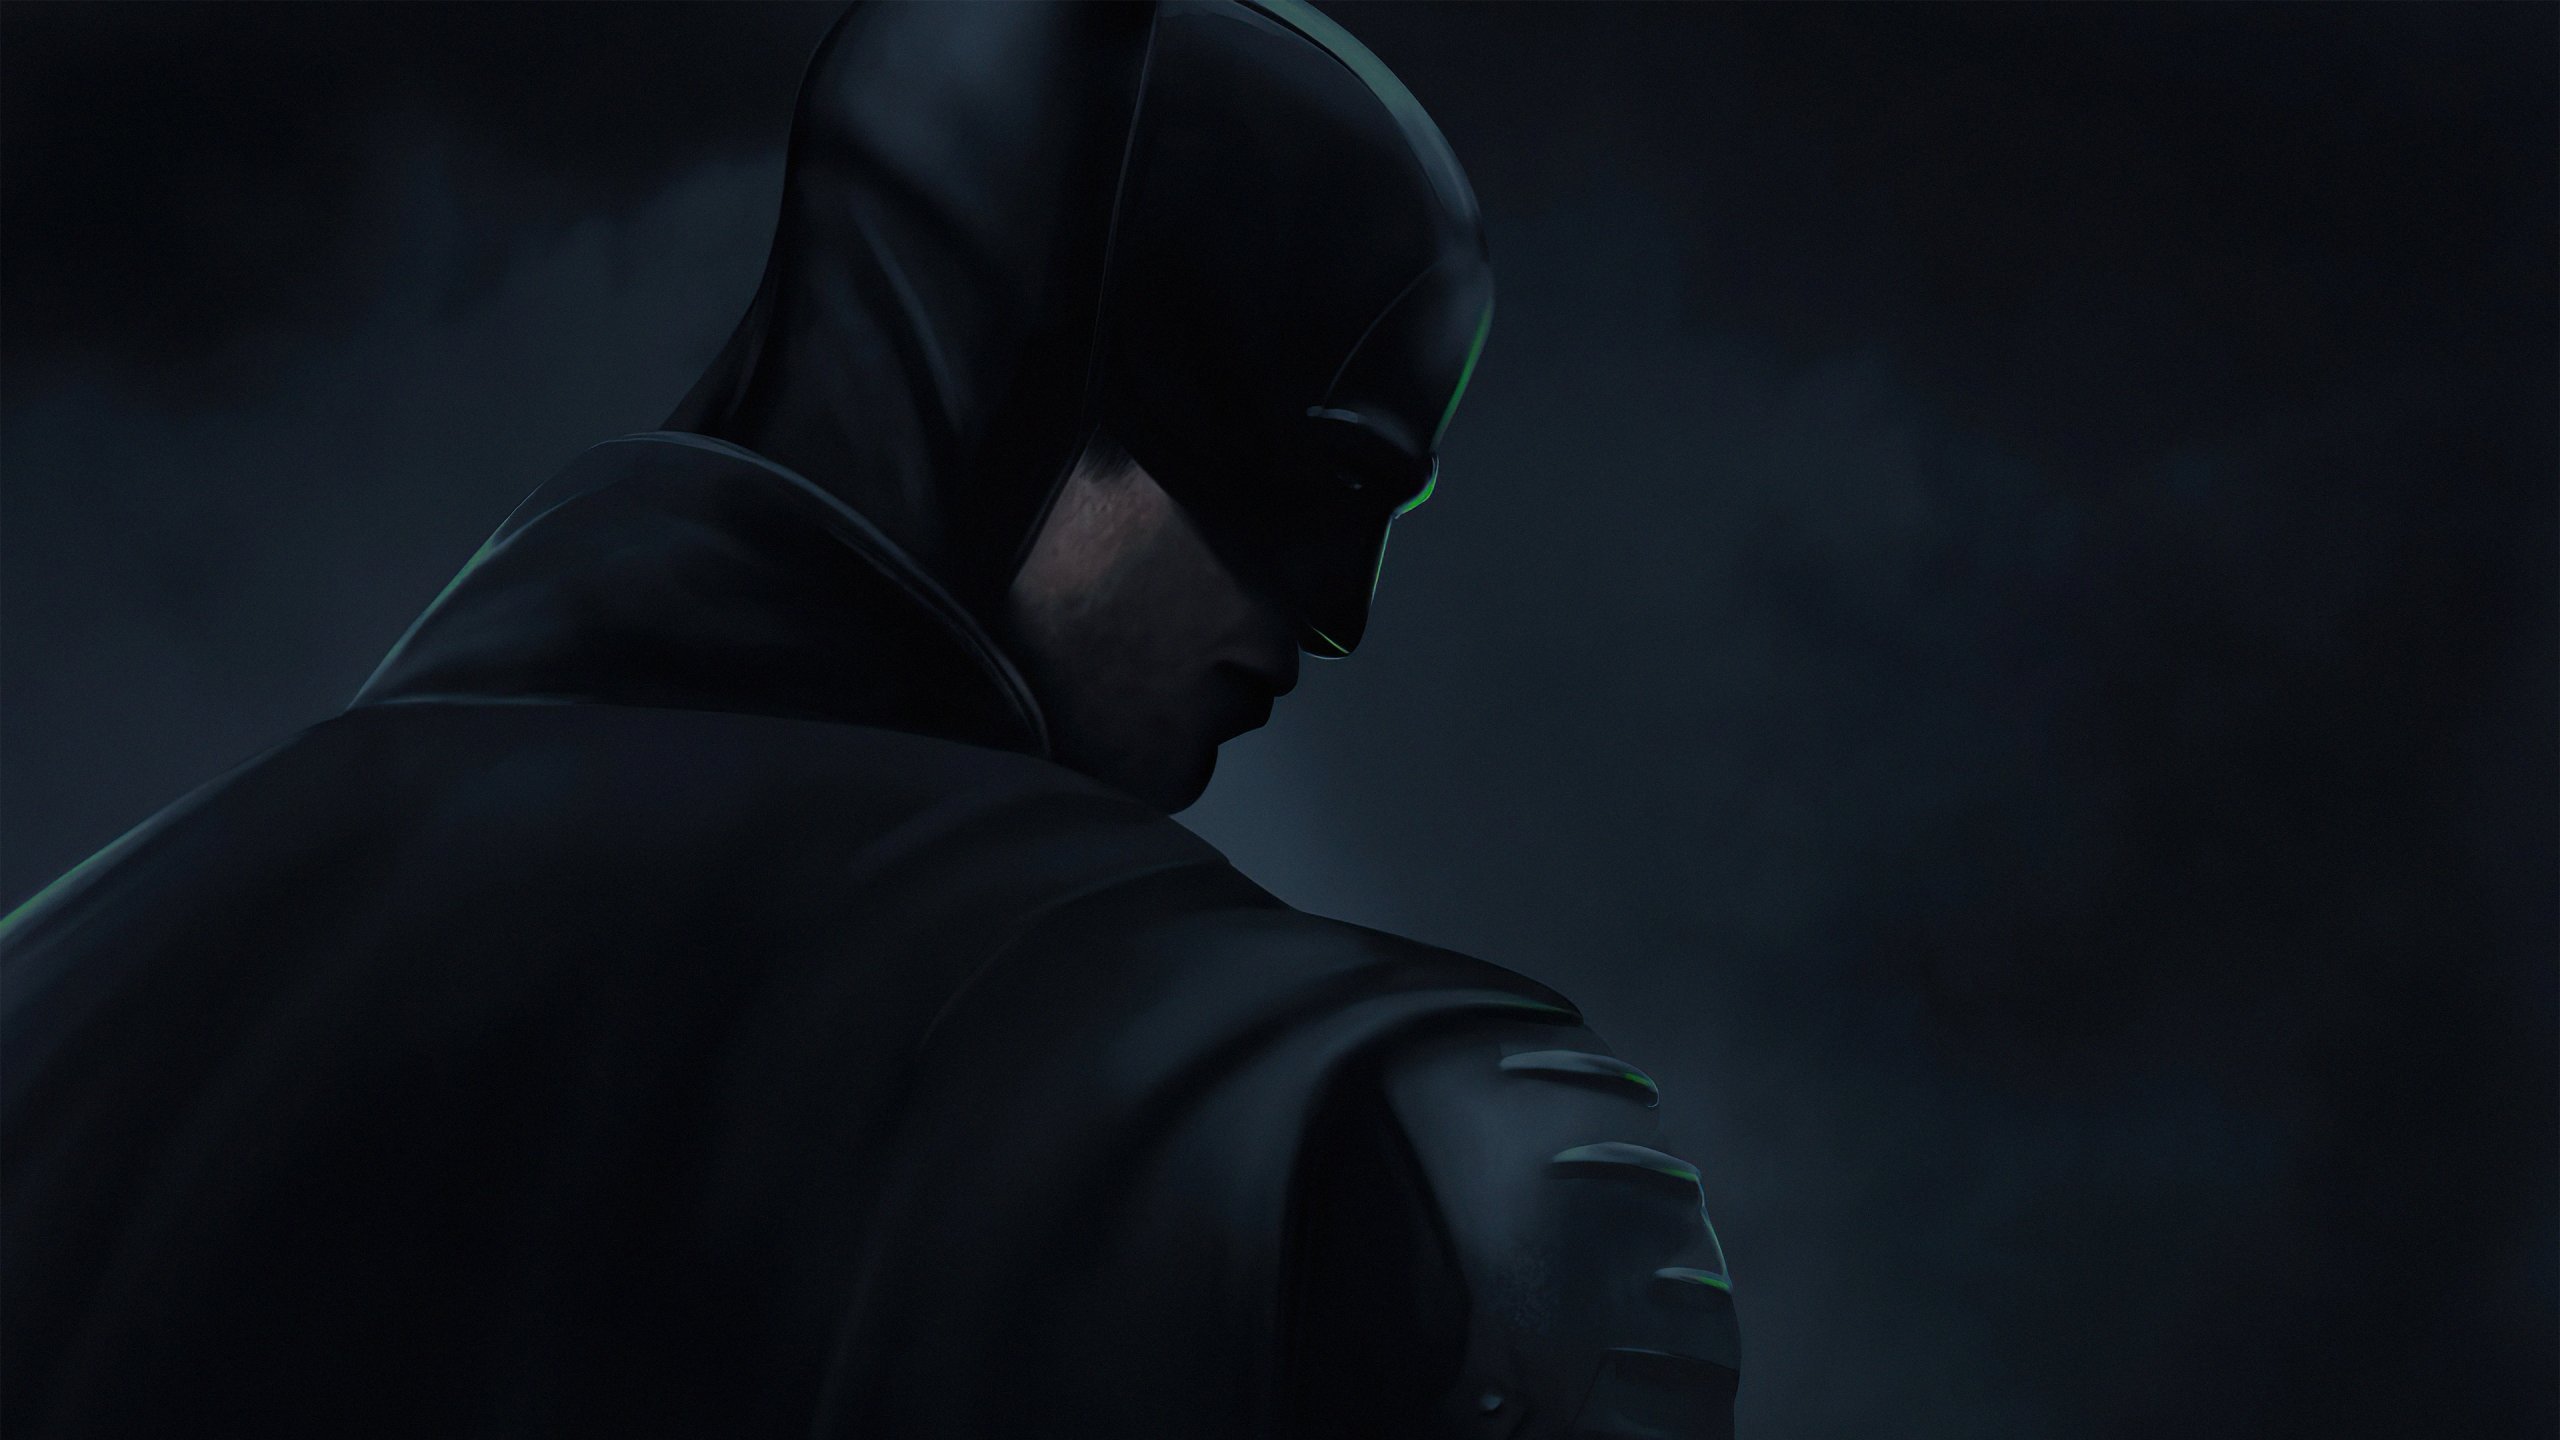 Cùng đón xem bộ hình nền The Batman 2022 Wallpaper với sự xuất hiện của Người Dơi! Không chỉ chứa đựng rất nhiều bí ẩn và hành động gay cấn, bộ hình nền này cũng có thể làm các fan của Người Dơi mong chờ thêm các tác phẩm tiếp theo!